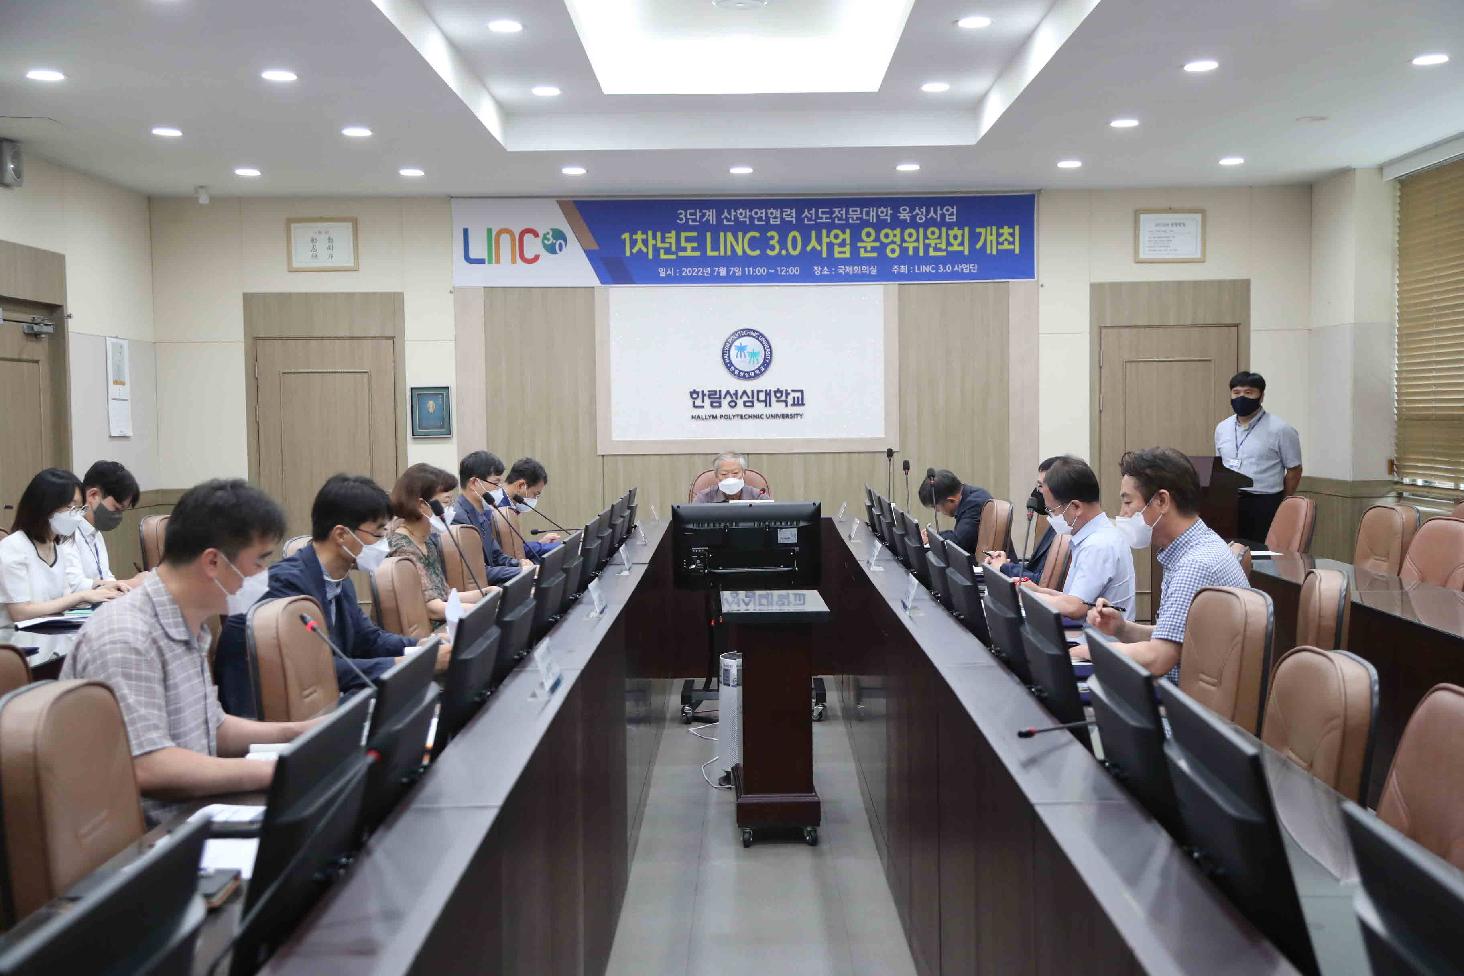 1차년도 LINC 3.0 사업 운영위원회 개최